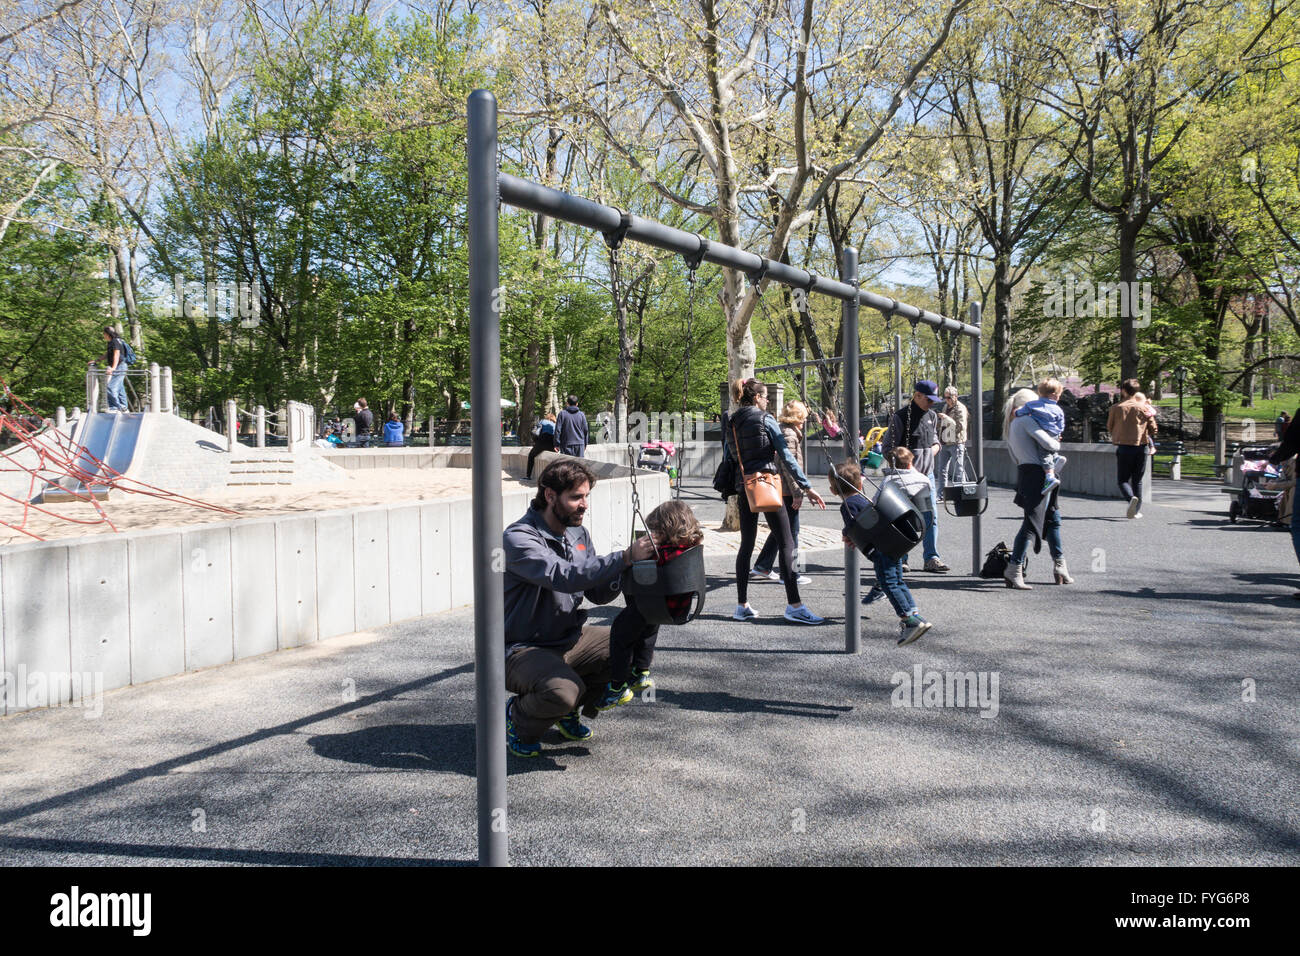 Children Playing, Heckscher Playground, Central Park, NYC Stock Photo